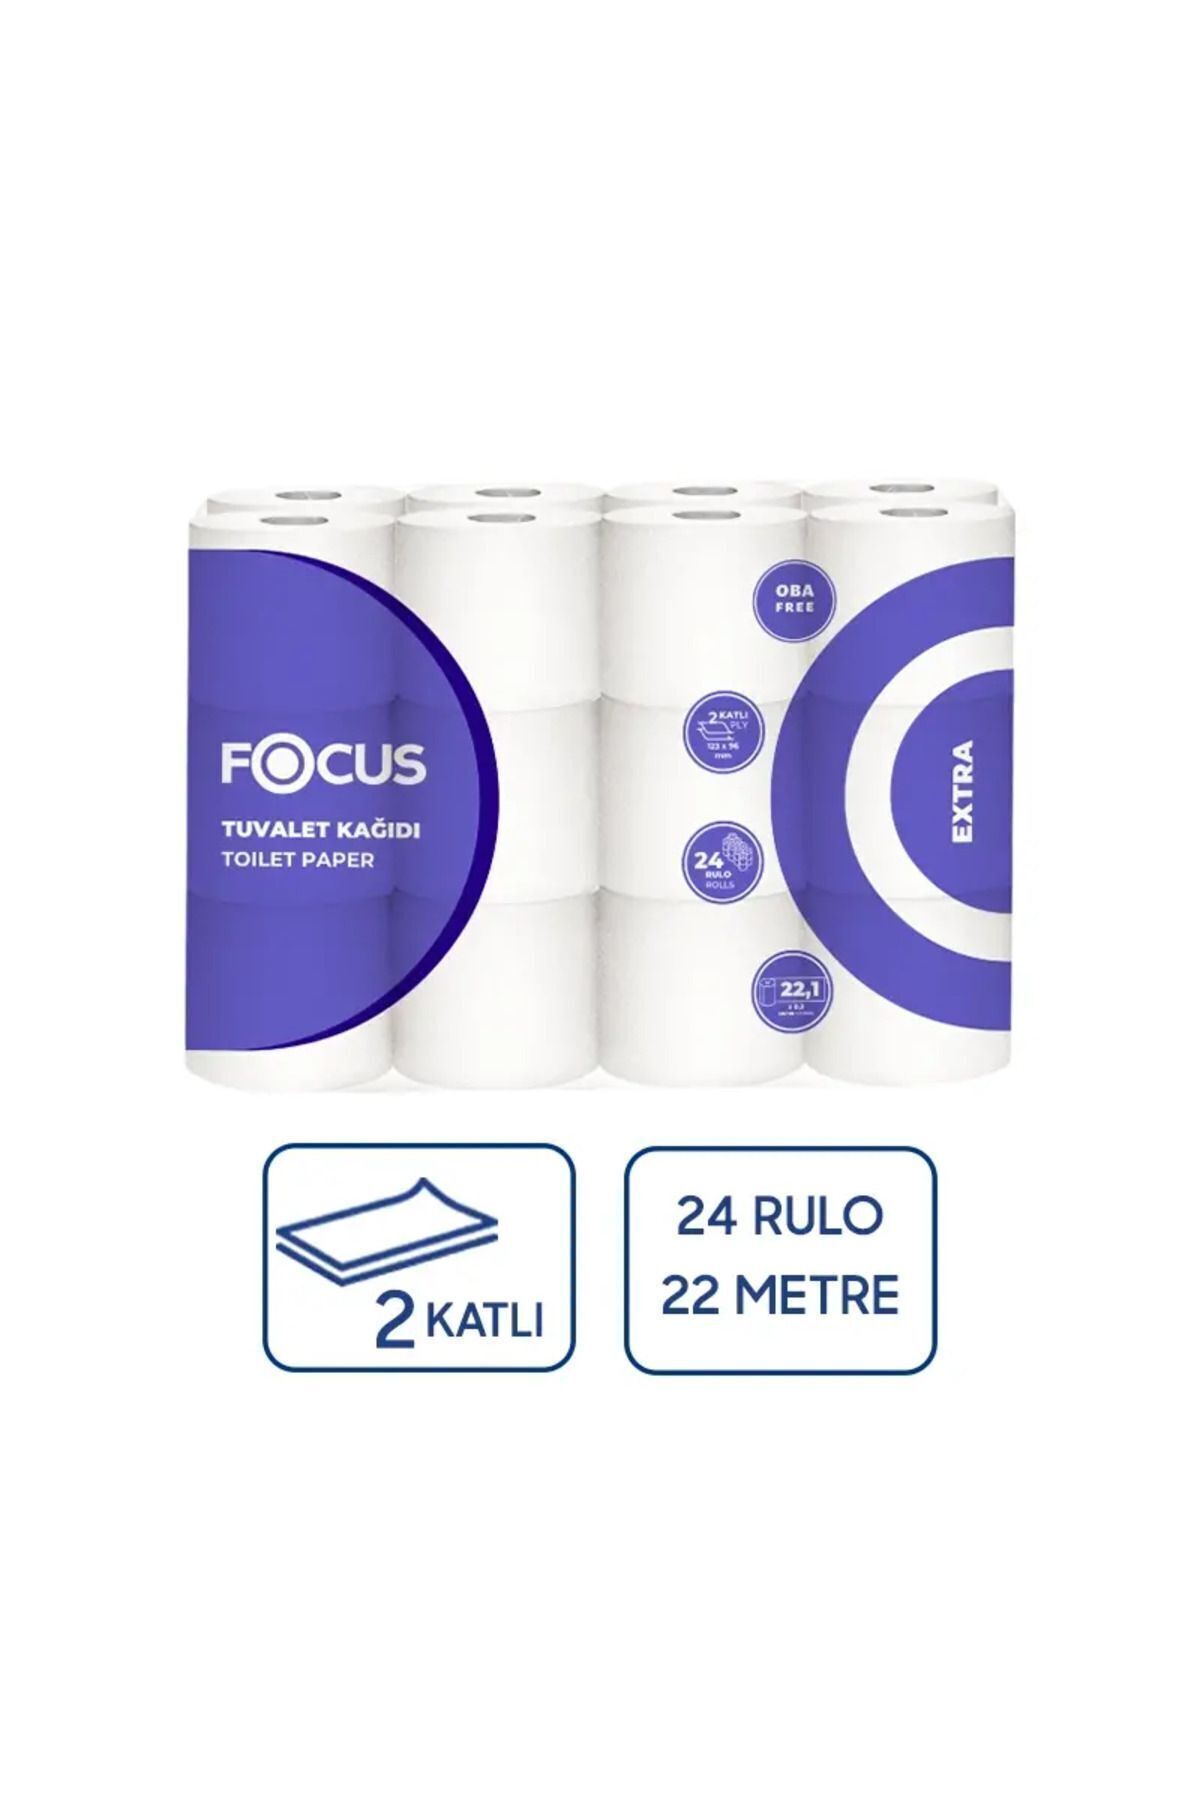 Focus Extra Tuvalet Kağıdı 24' lü 3 Paket 2 Katlı (Toplam 72'li)